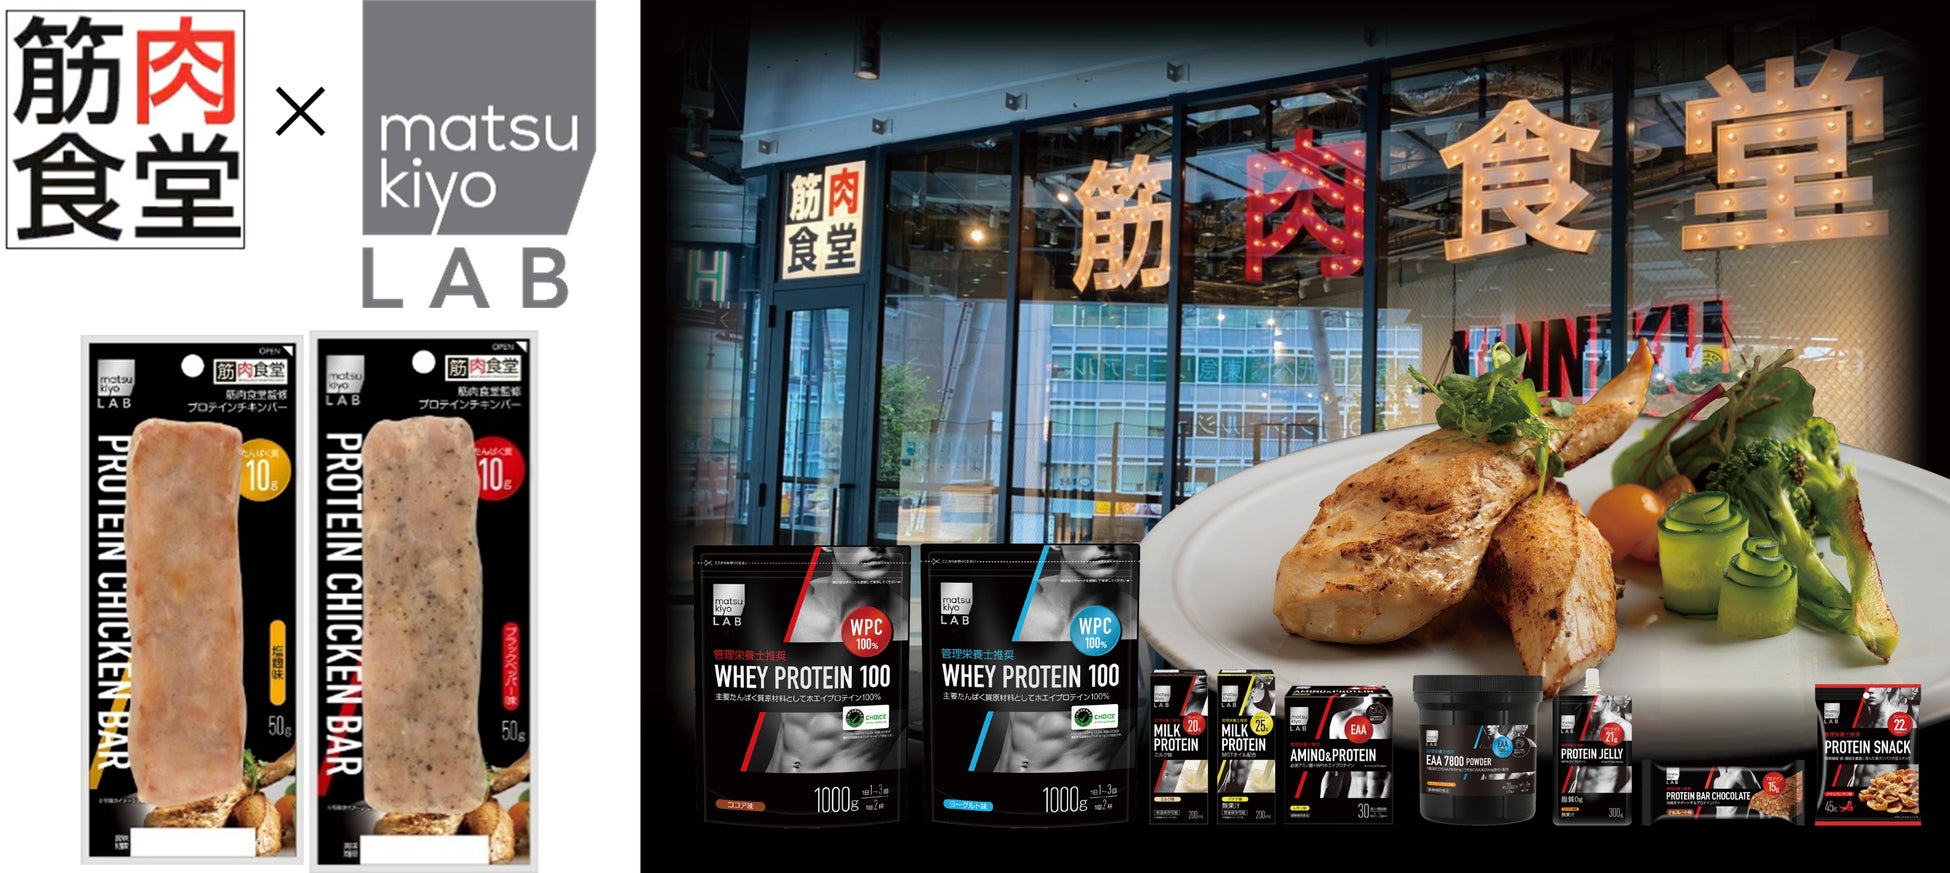 たんぱく質をおいしく摂れるグリルダイニング「筋肉食堂」とのコラボ商品が登場　「matsukiyo LAB プロテインチキンバー」５月11日販売開始